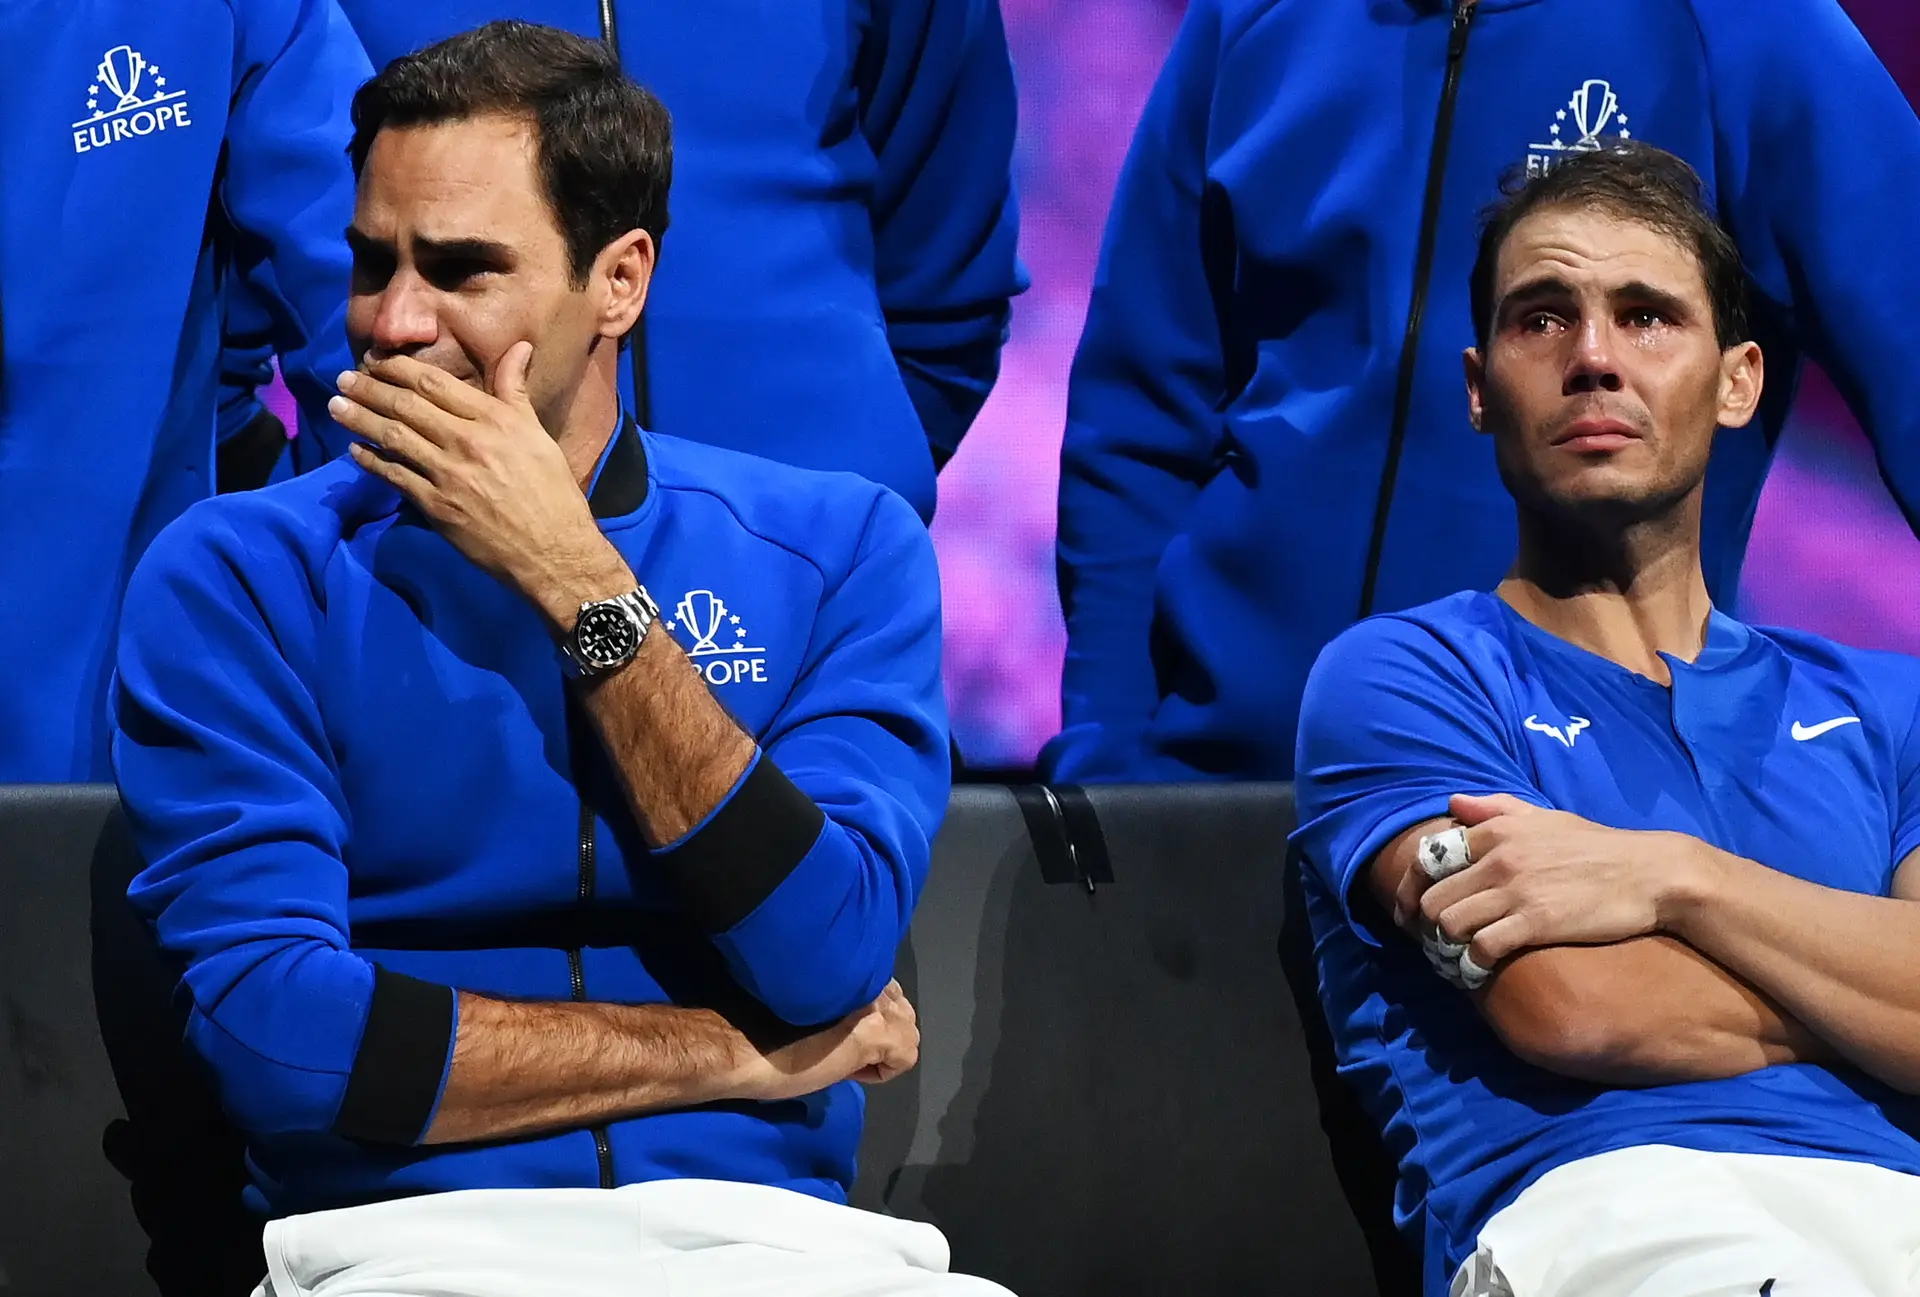 LAVER CUP 2022 JOGOS: Djokovic joga hoje? Federer vai jogar? E Nadal?  Confira as partidas deste sábado (24) na Laver Cup e onde assistir ao vivo